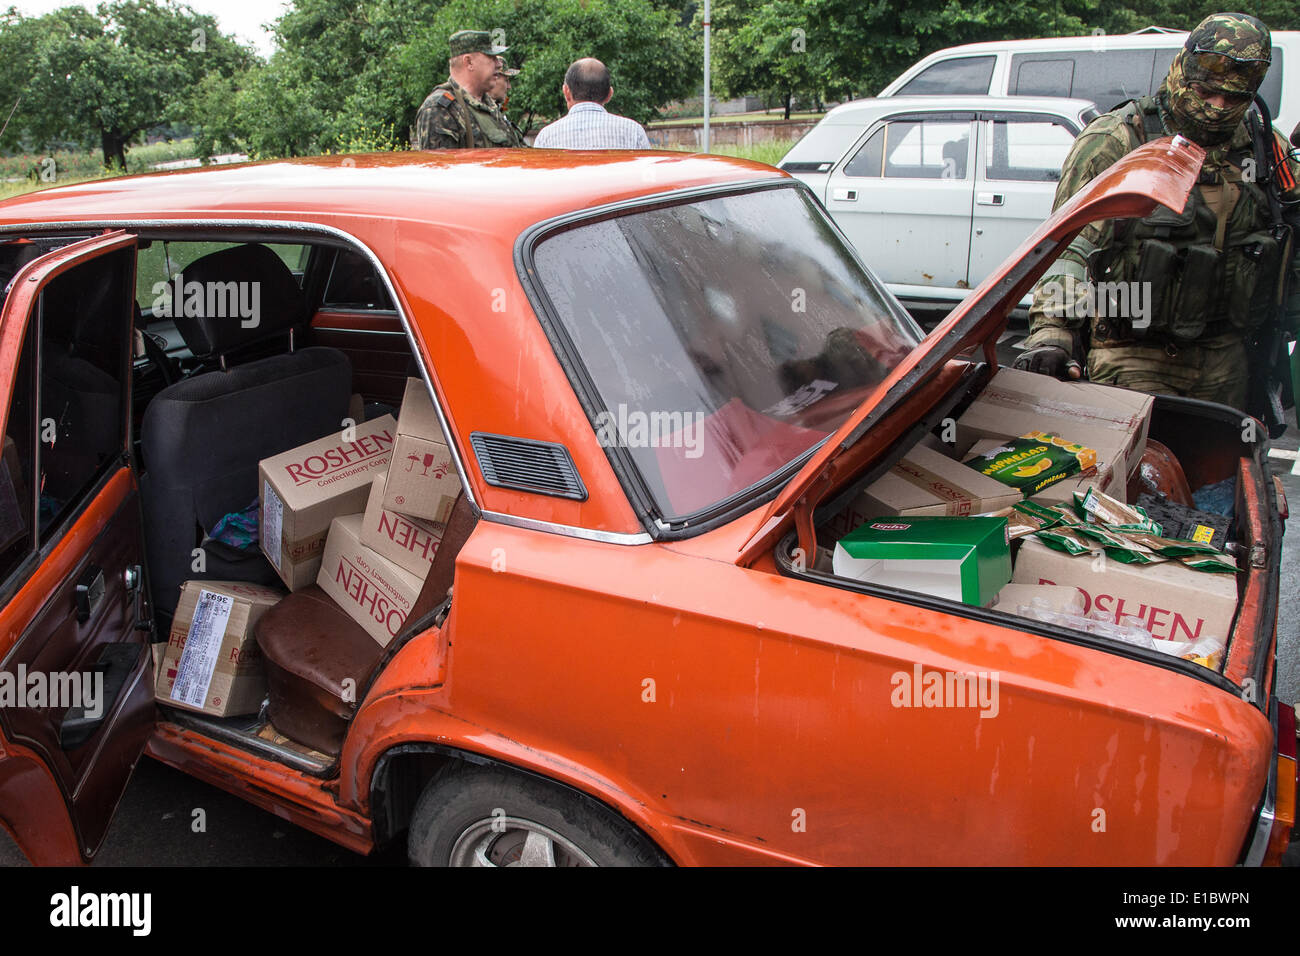 Donetsk, Ukraine. 29 mai, 2014. Pro-Russian seperatists vérifier une voiture que l'on soupçonne des biens pillés à Donetsk, Ukraine, 29 mai 2014. Photo : Jan A. Nicolas/dpa/Alamy Live News Banque D'Images